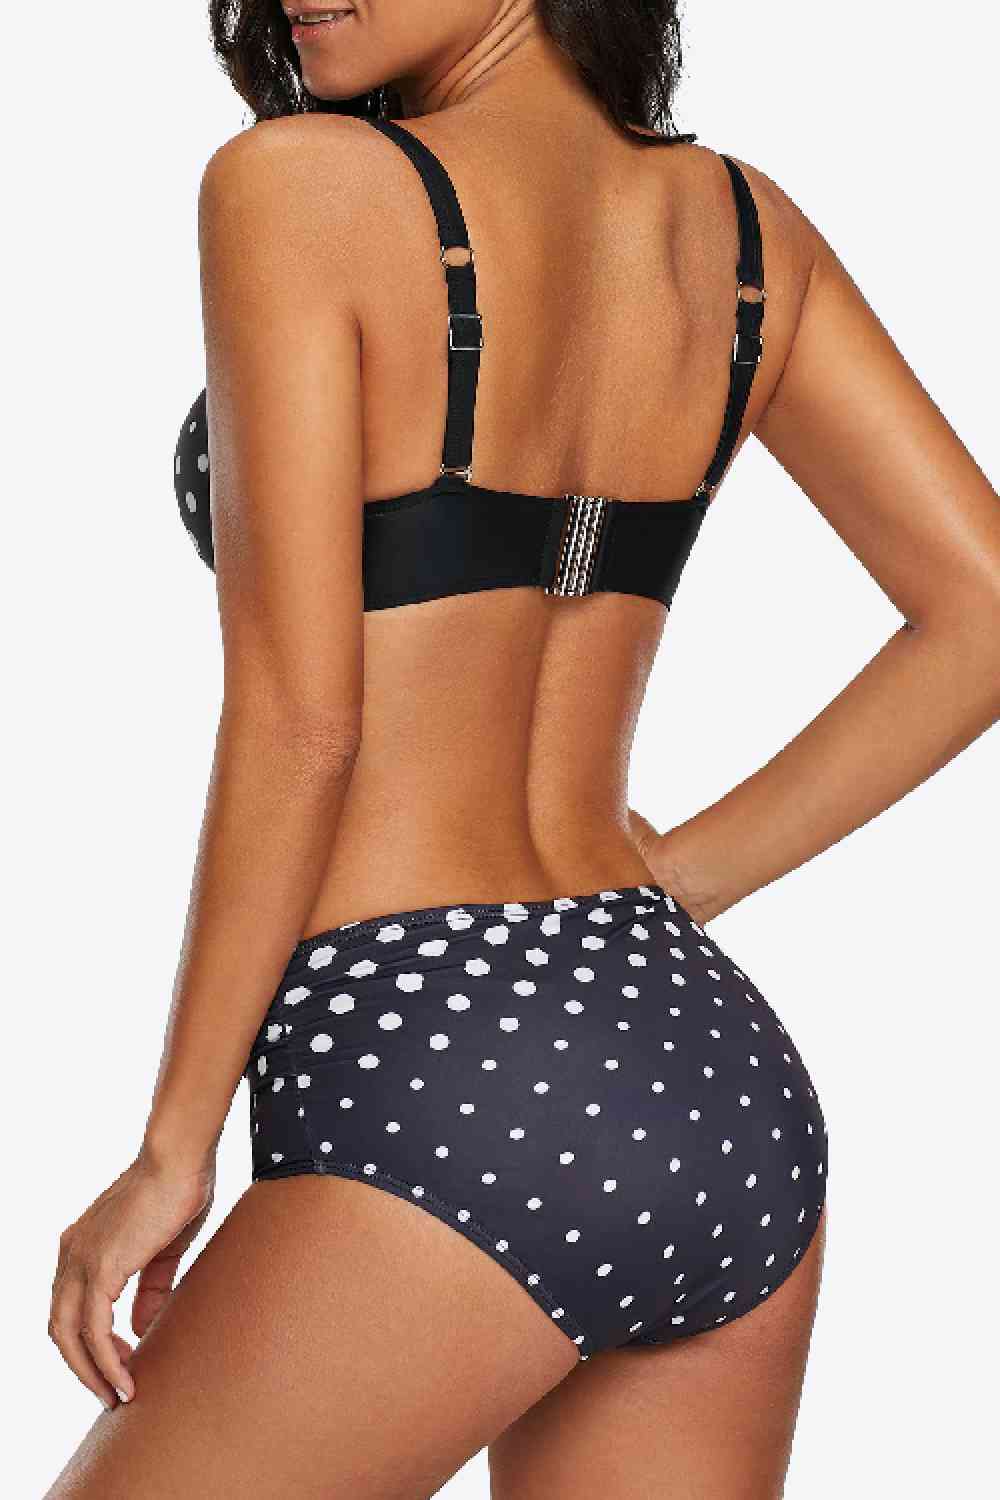 High Waist Polka Dot Bikini in Size M, L, XL, or 2XL